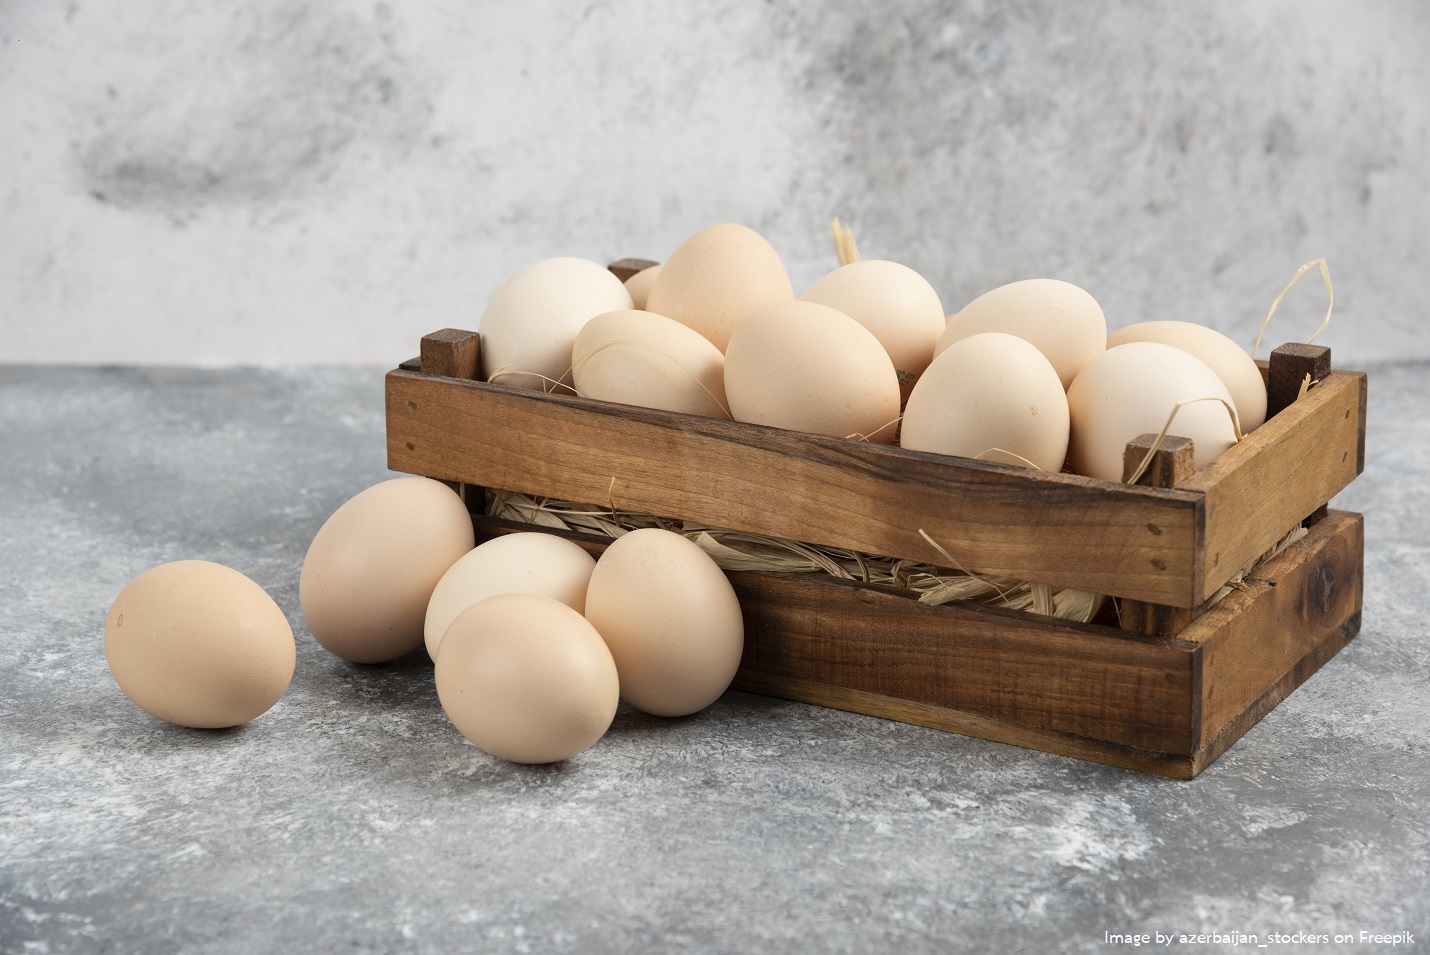 ส่งออกไข่ไก่ได้อานิสงส์ไข้หวัดนกระบาด ขณะที่ไก่ยังแผ่วหลังสต็อกท่วม